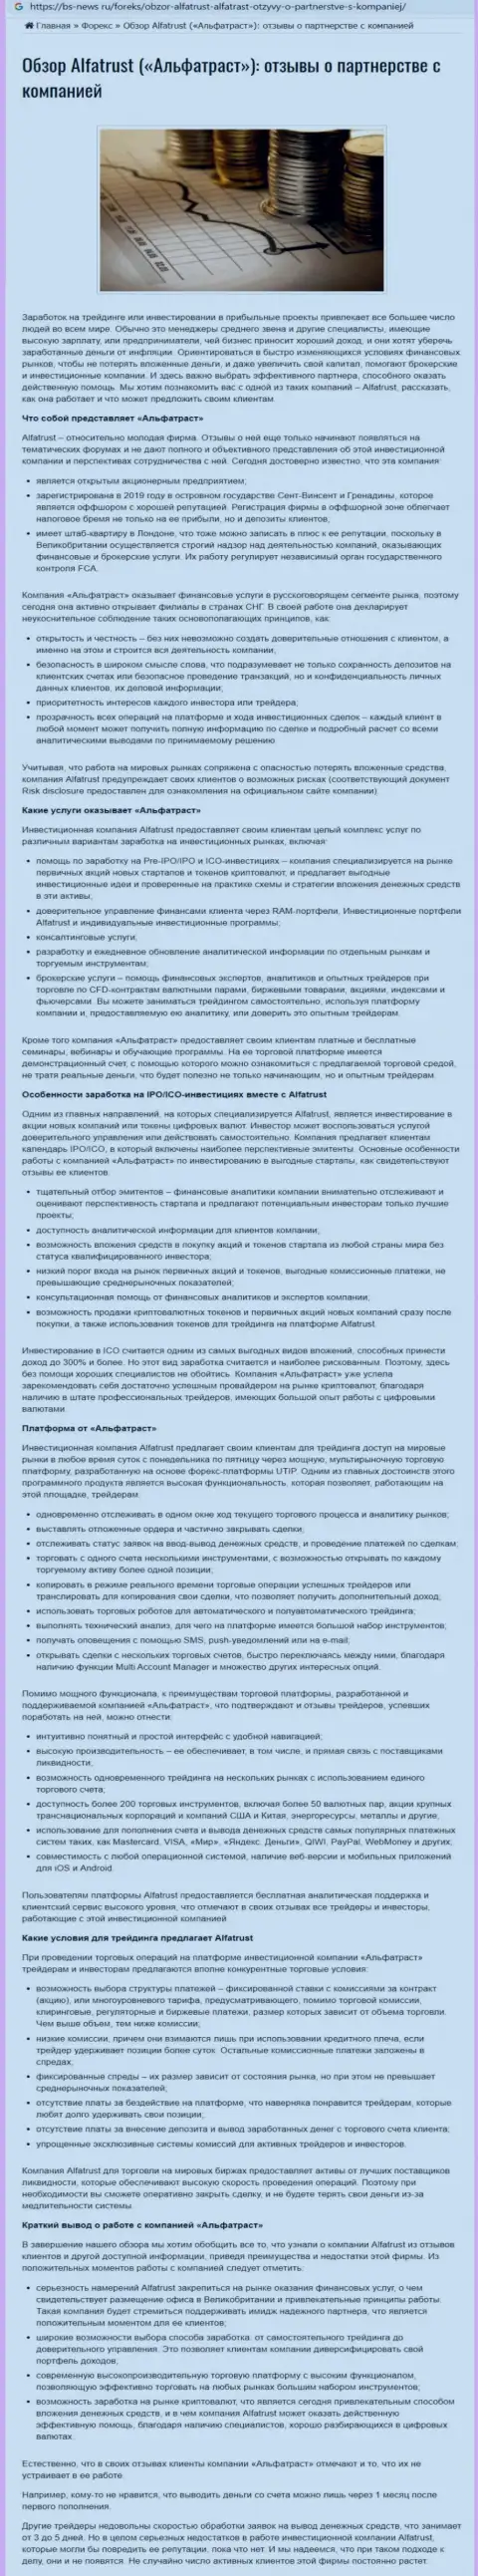 Информационный сервис bs news ru предоставил обзорную статью об FOREX дилинговом центре Альфа Траст